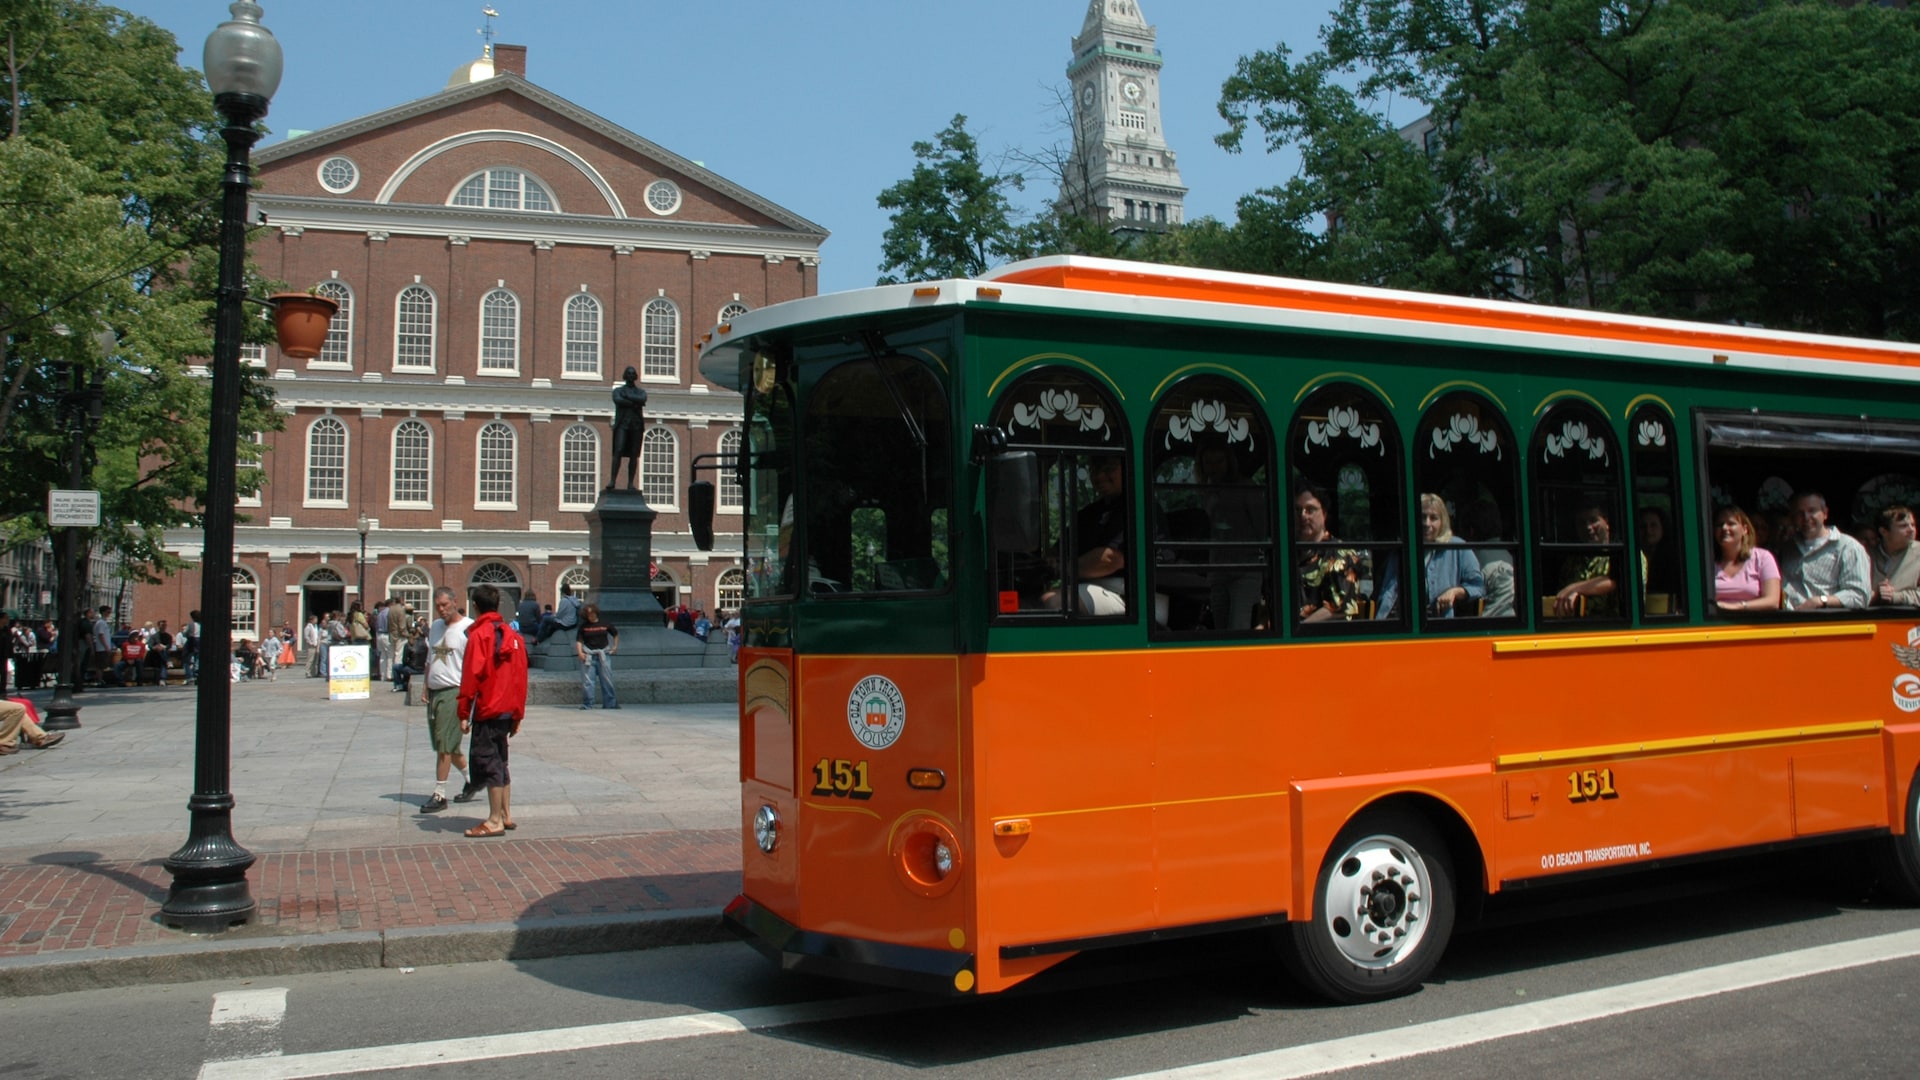 trolley tour of boston